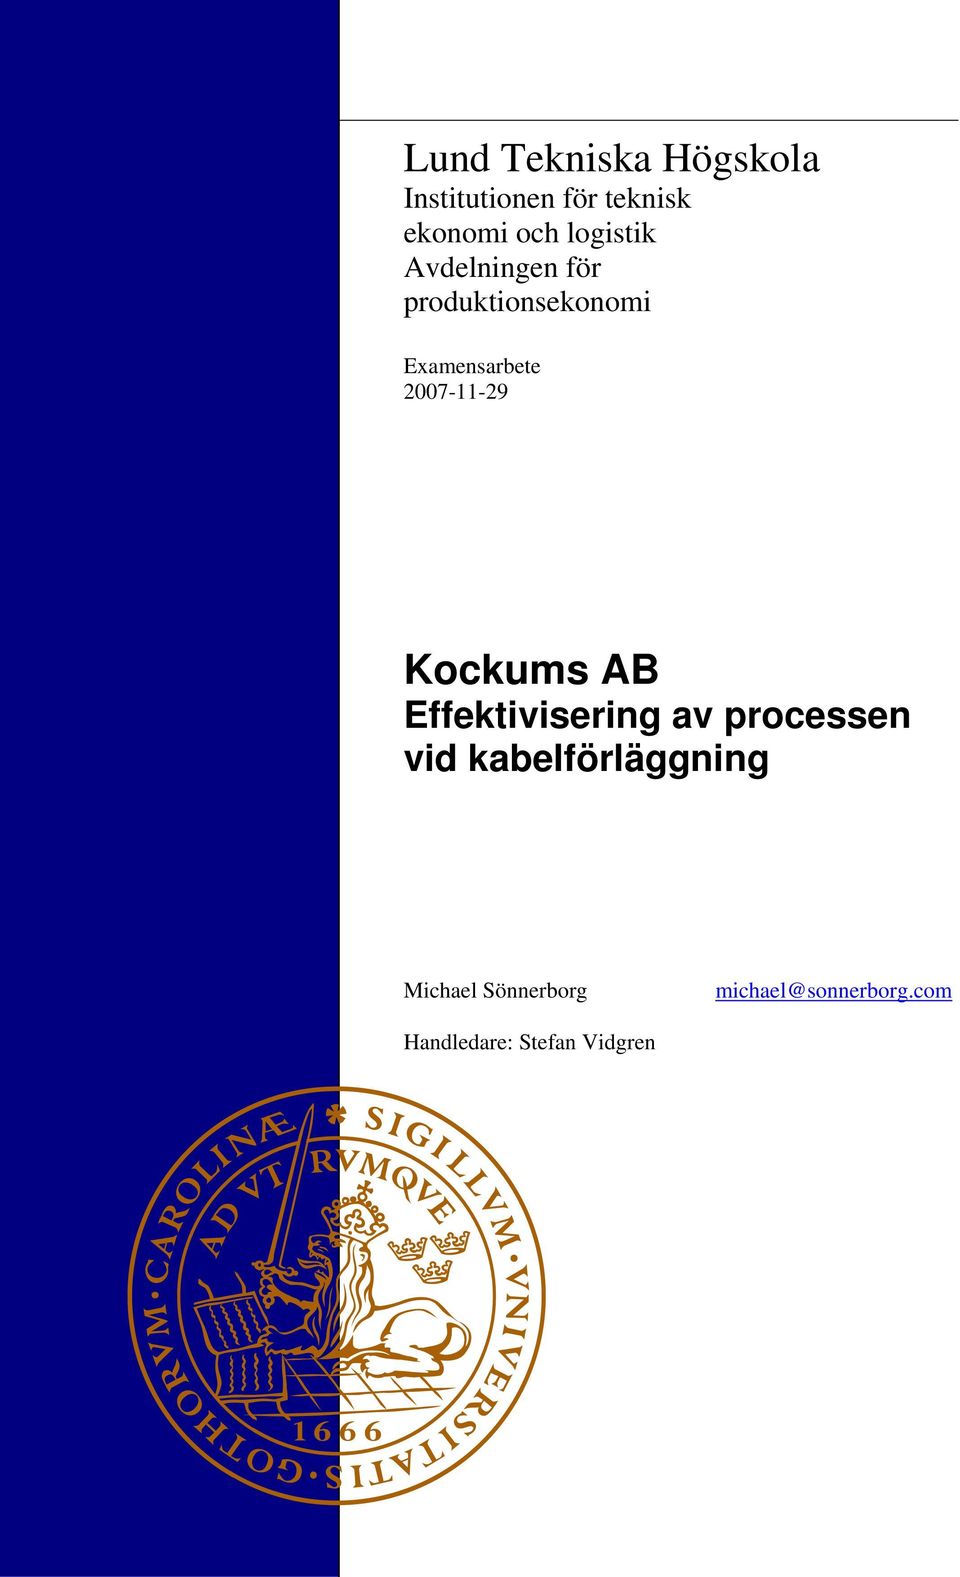 2007-11-29 Kockums AB Effektivisering av processen vid